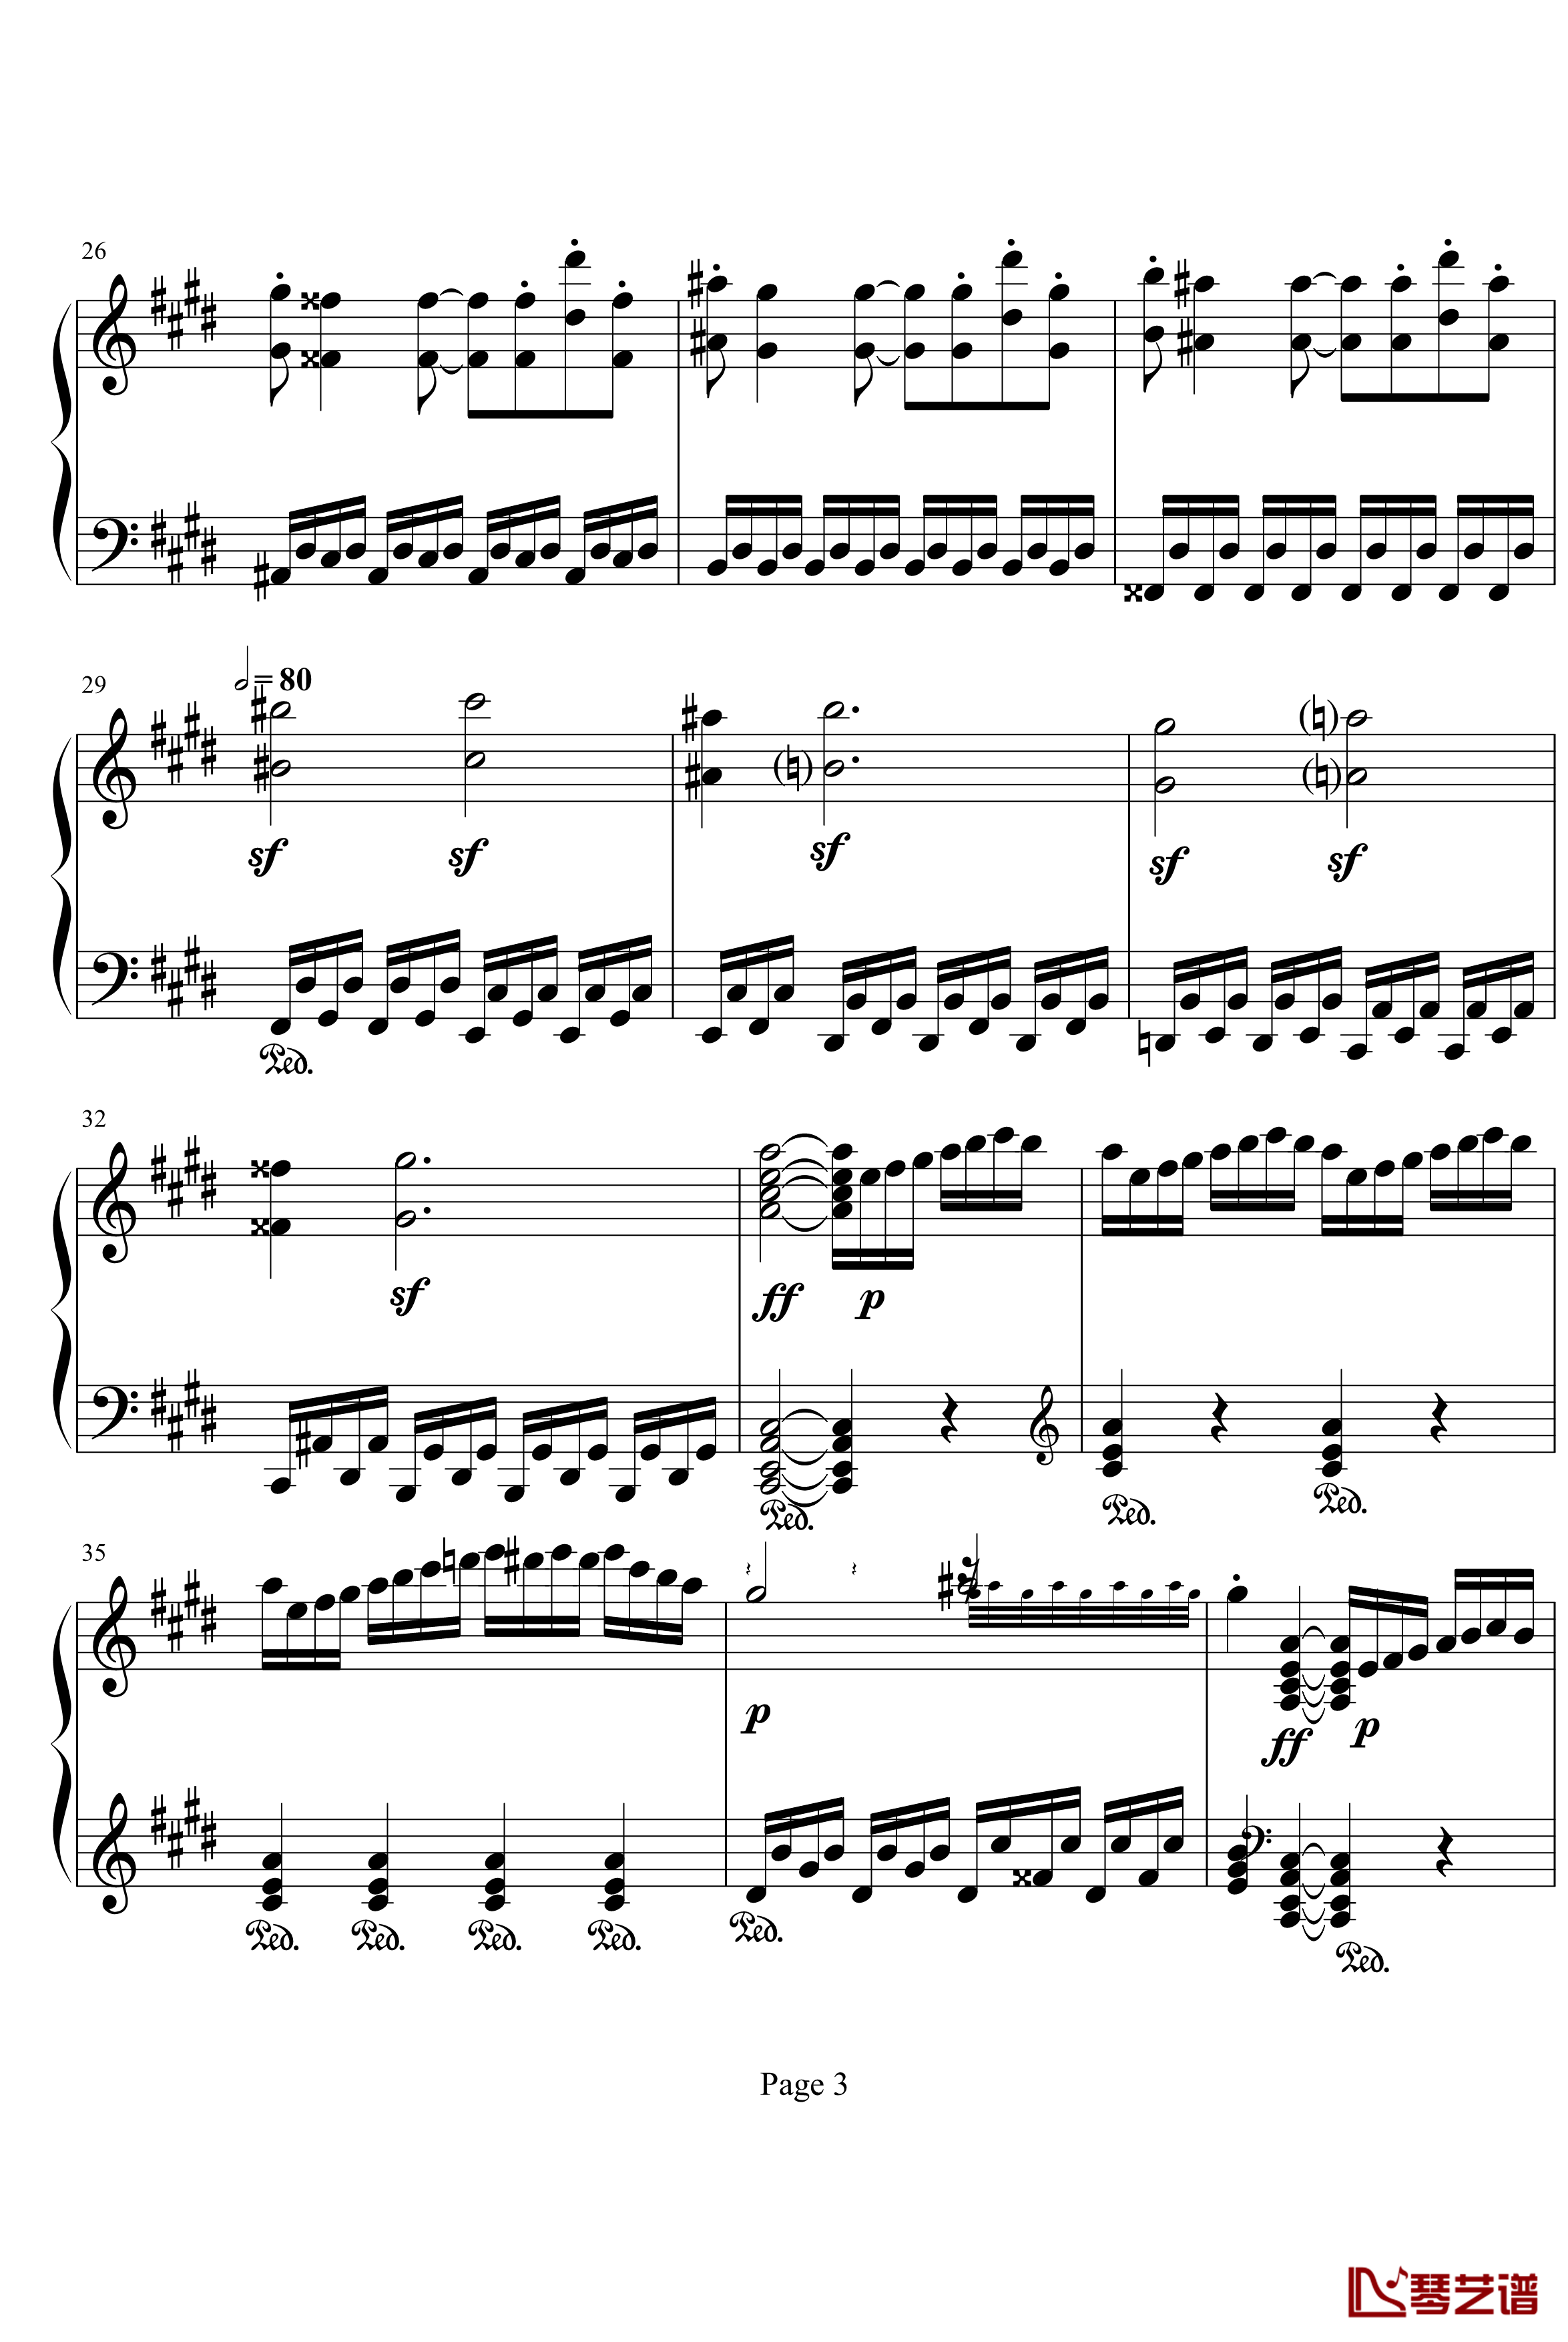 月光奏鸣曲第三乐章钢琴谱-贝多芬-beethoven3